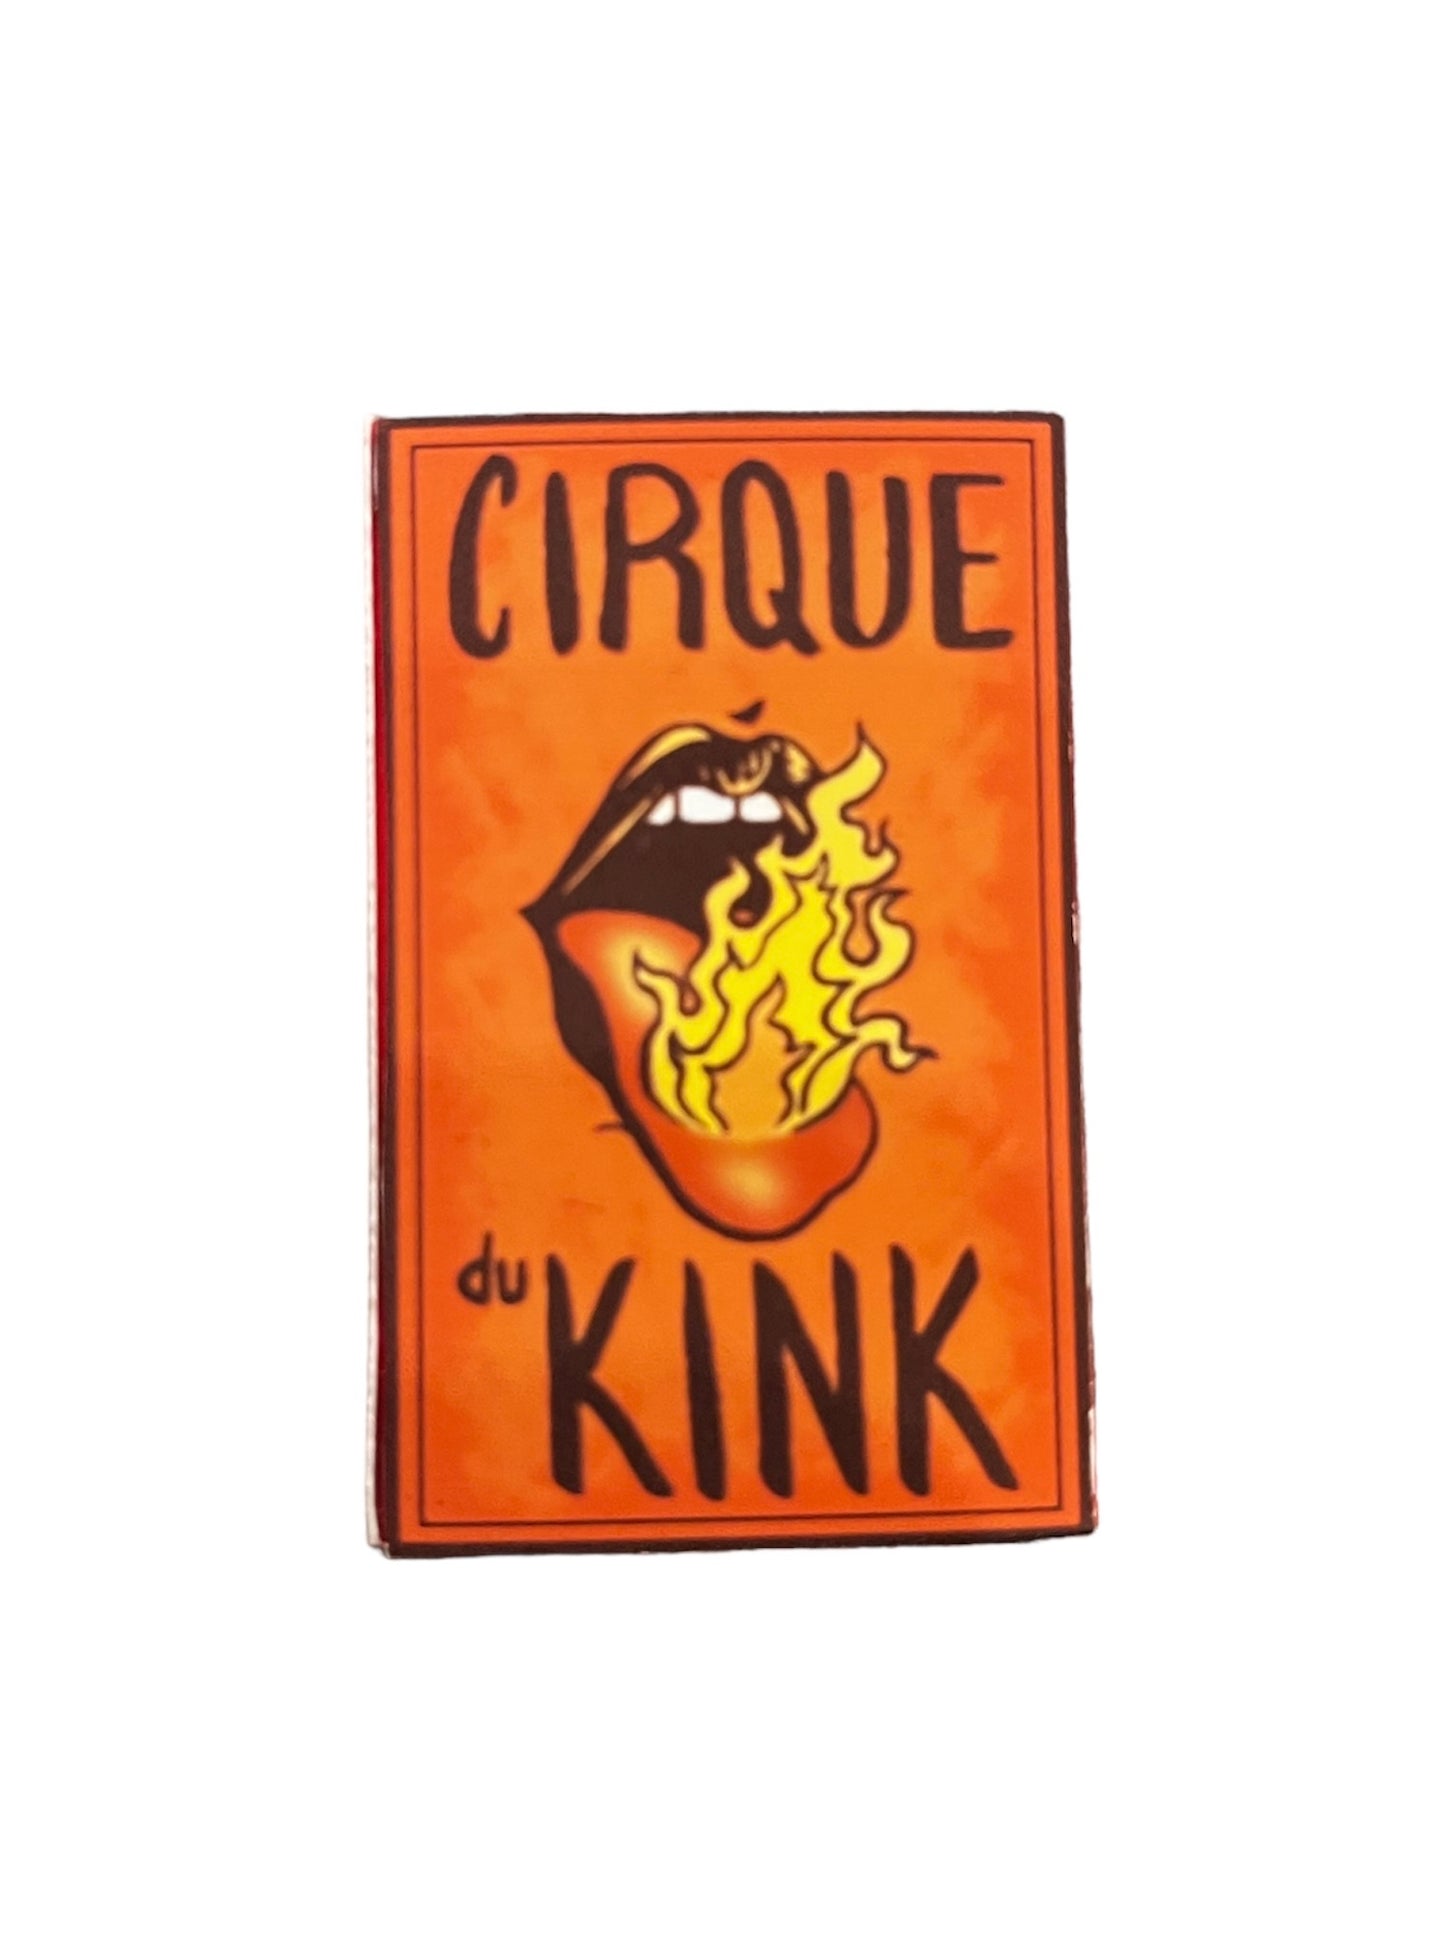 Matchbooks by Cirque Du Kink